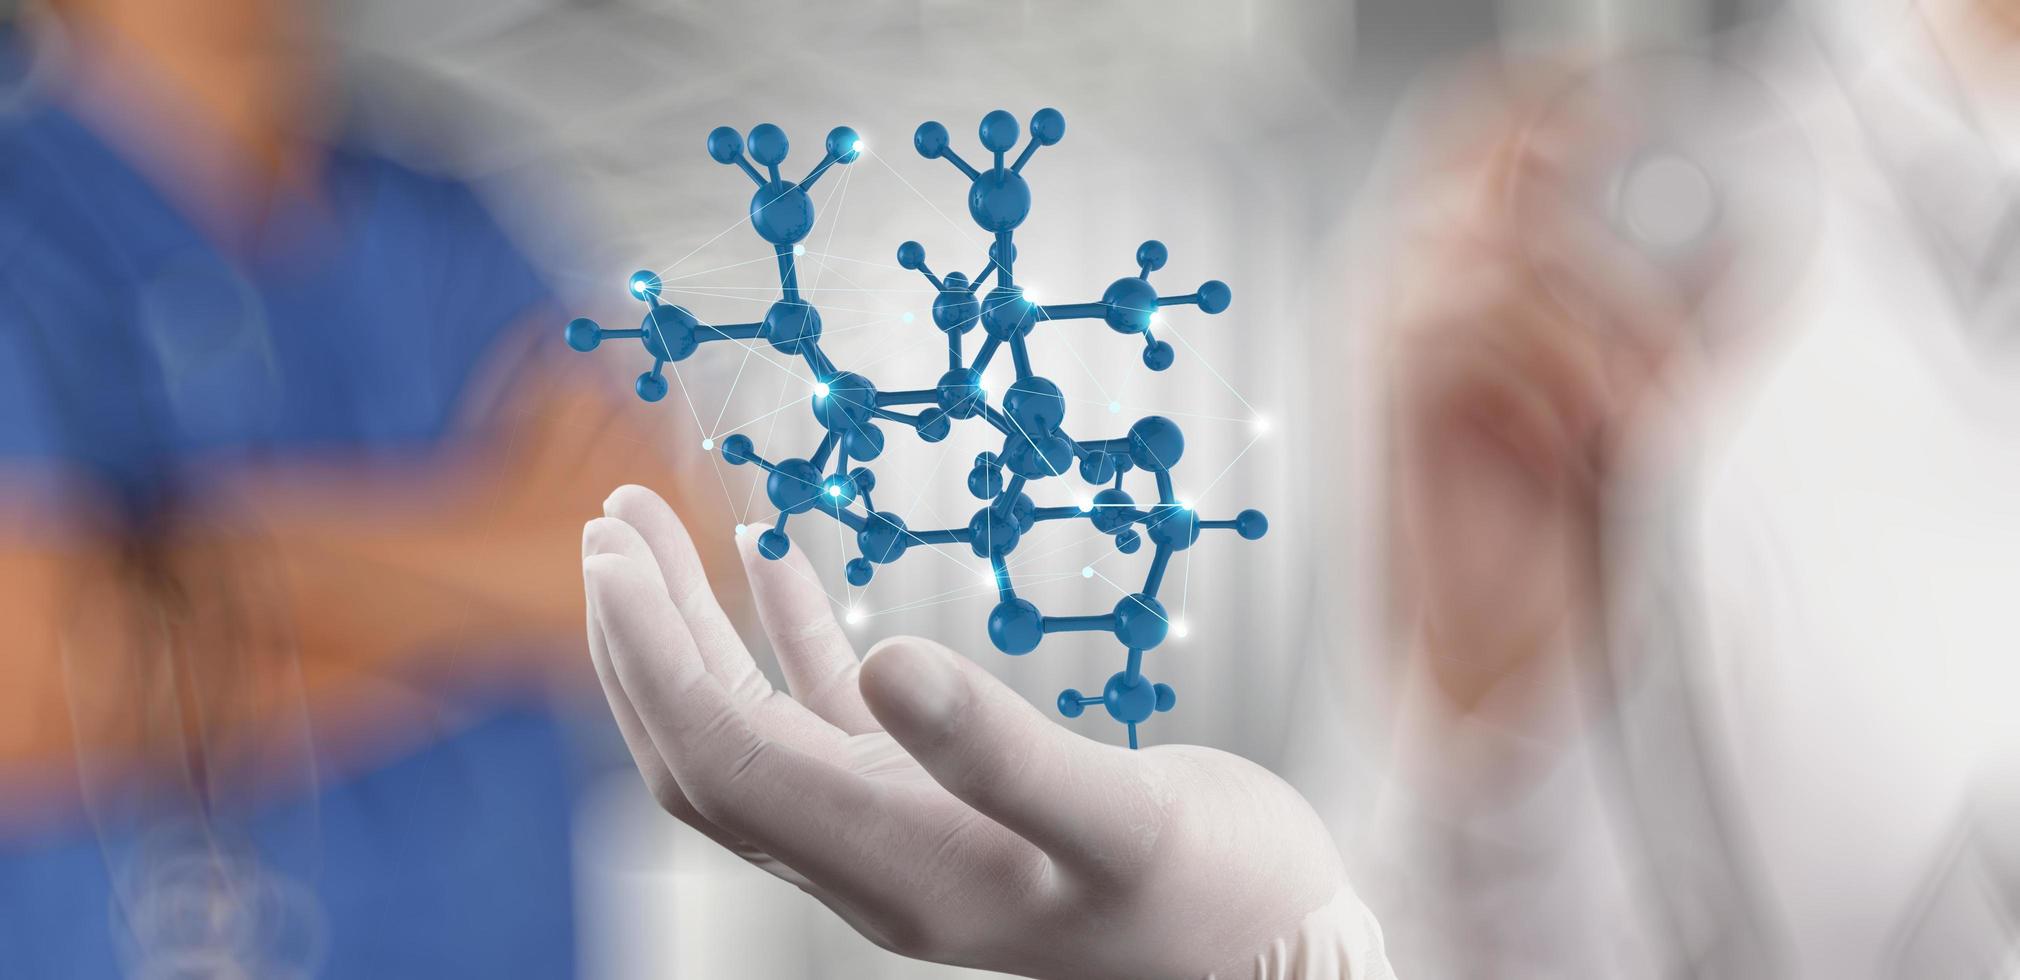 La mano del médico científico sostiene la estructura molecular virtual en el laboratorio como concepto foto